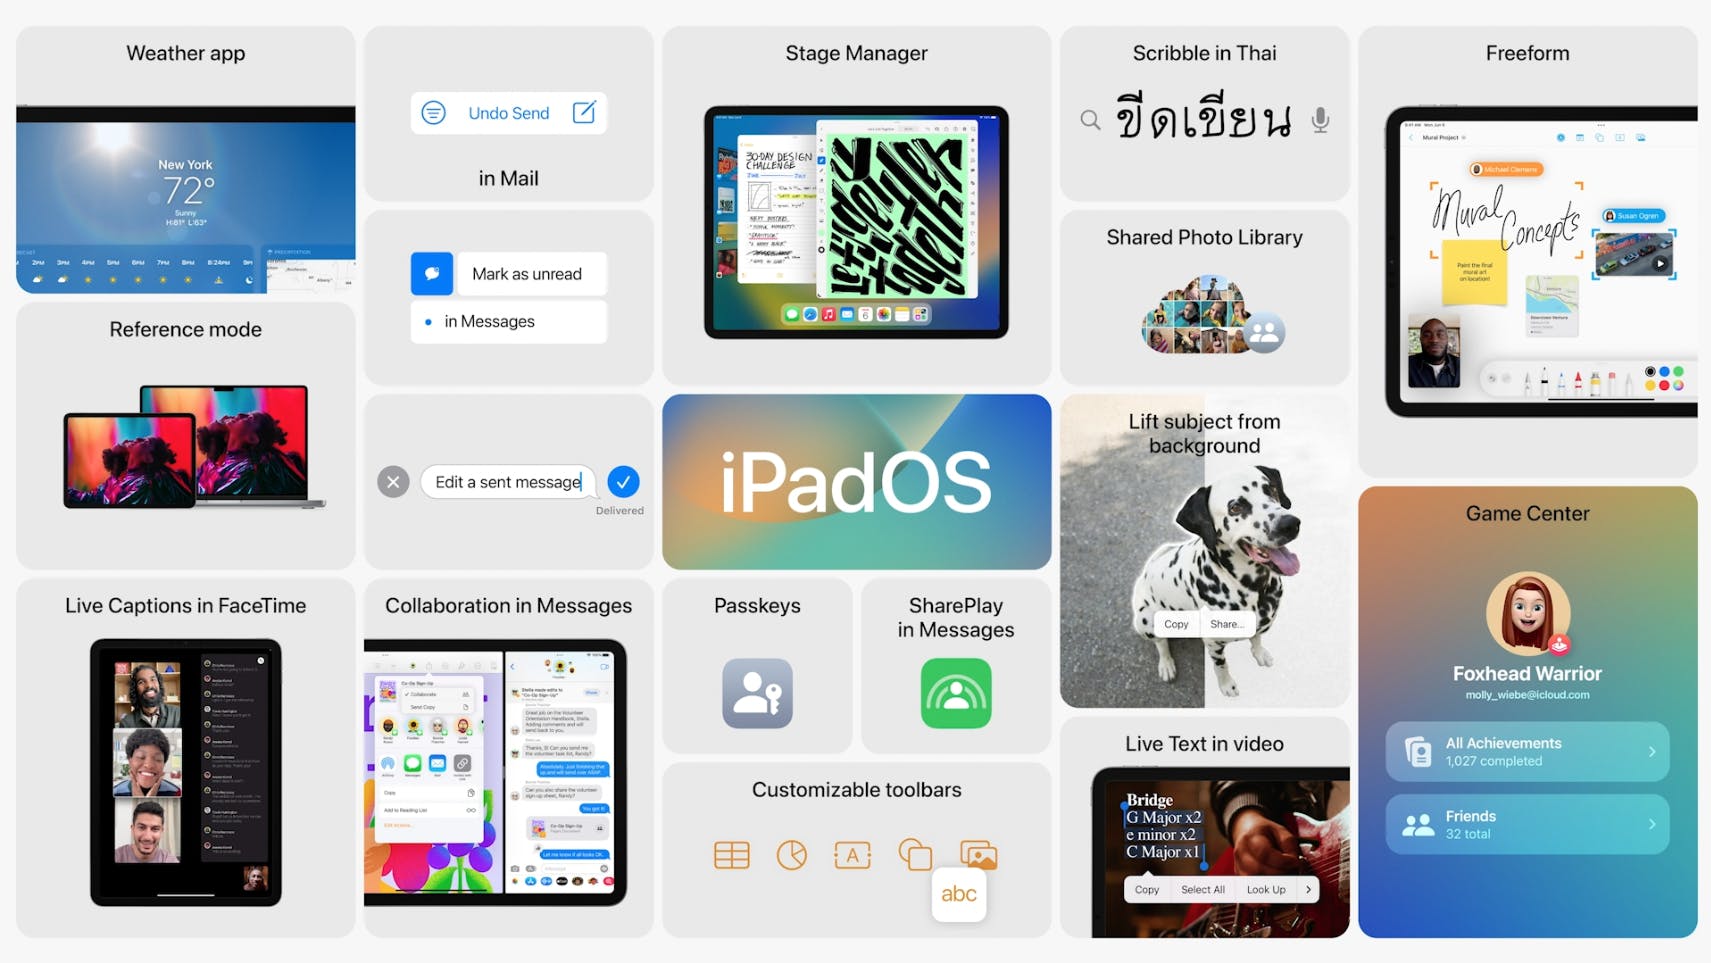 iPad OS Summary slide